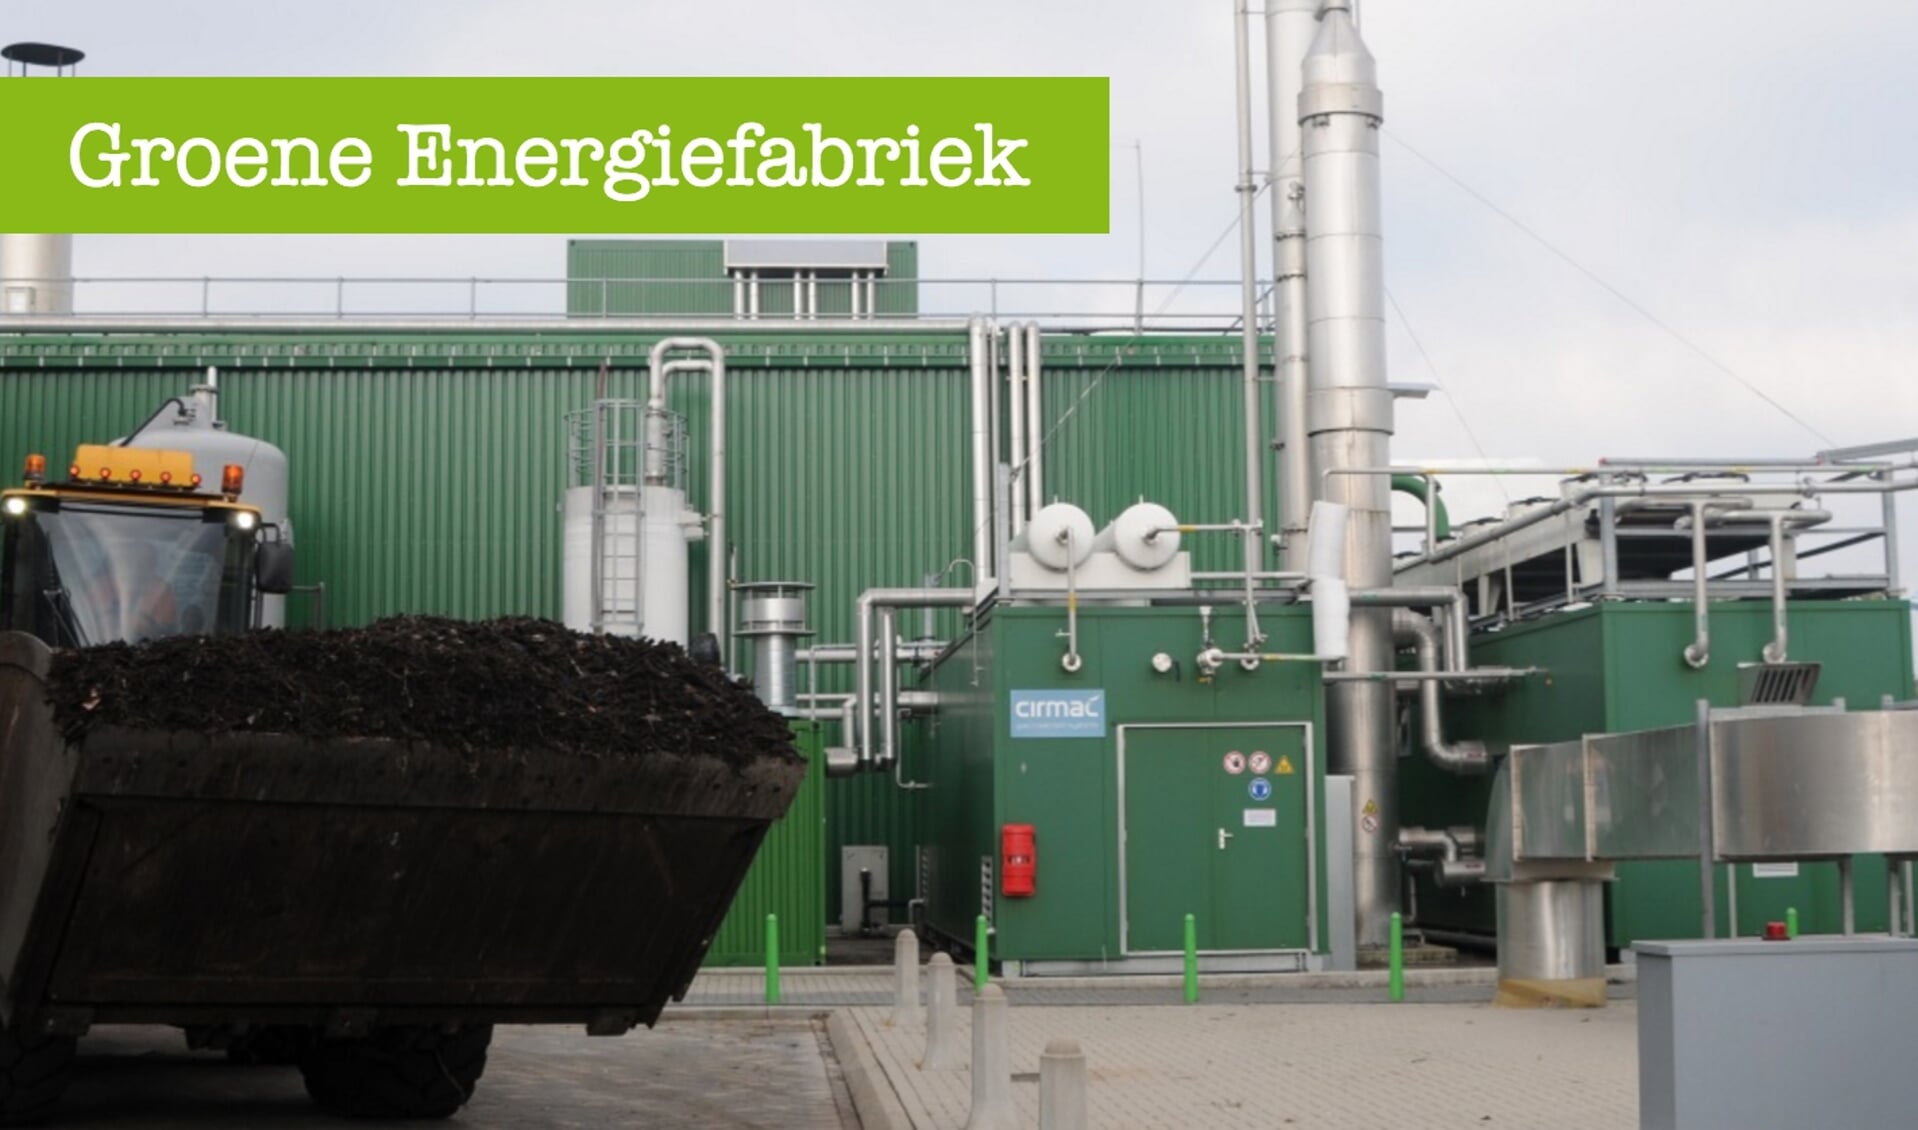 Breng een bezoekje aan de 'Groene Energiefabriek' in Rijsenhout.